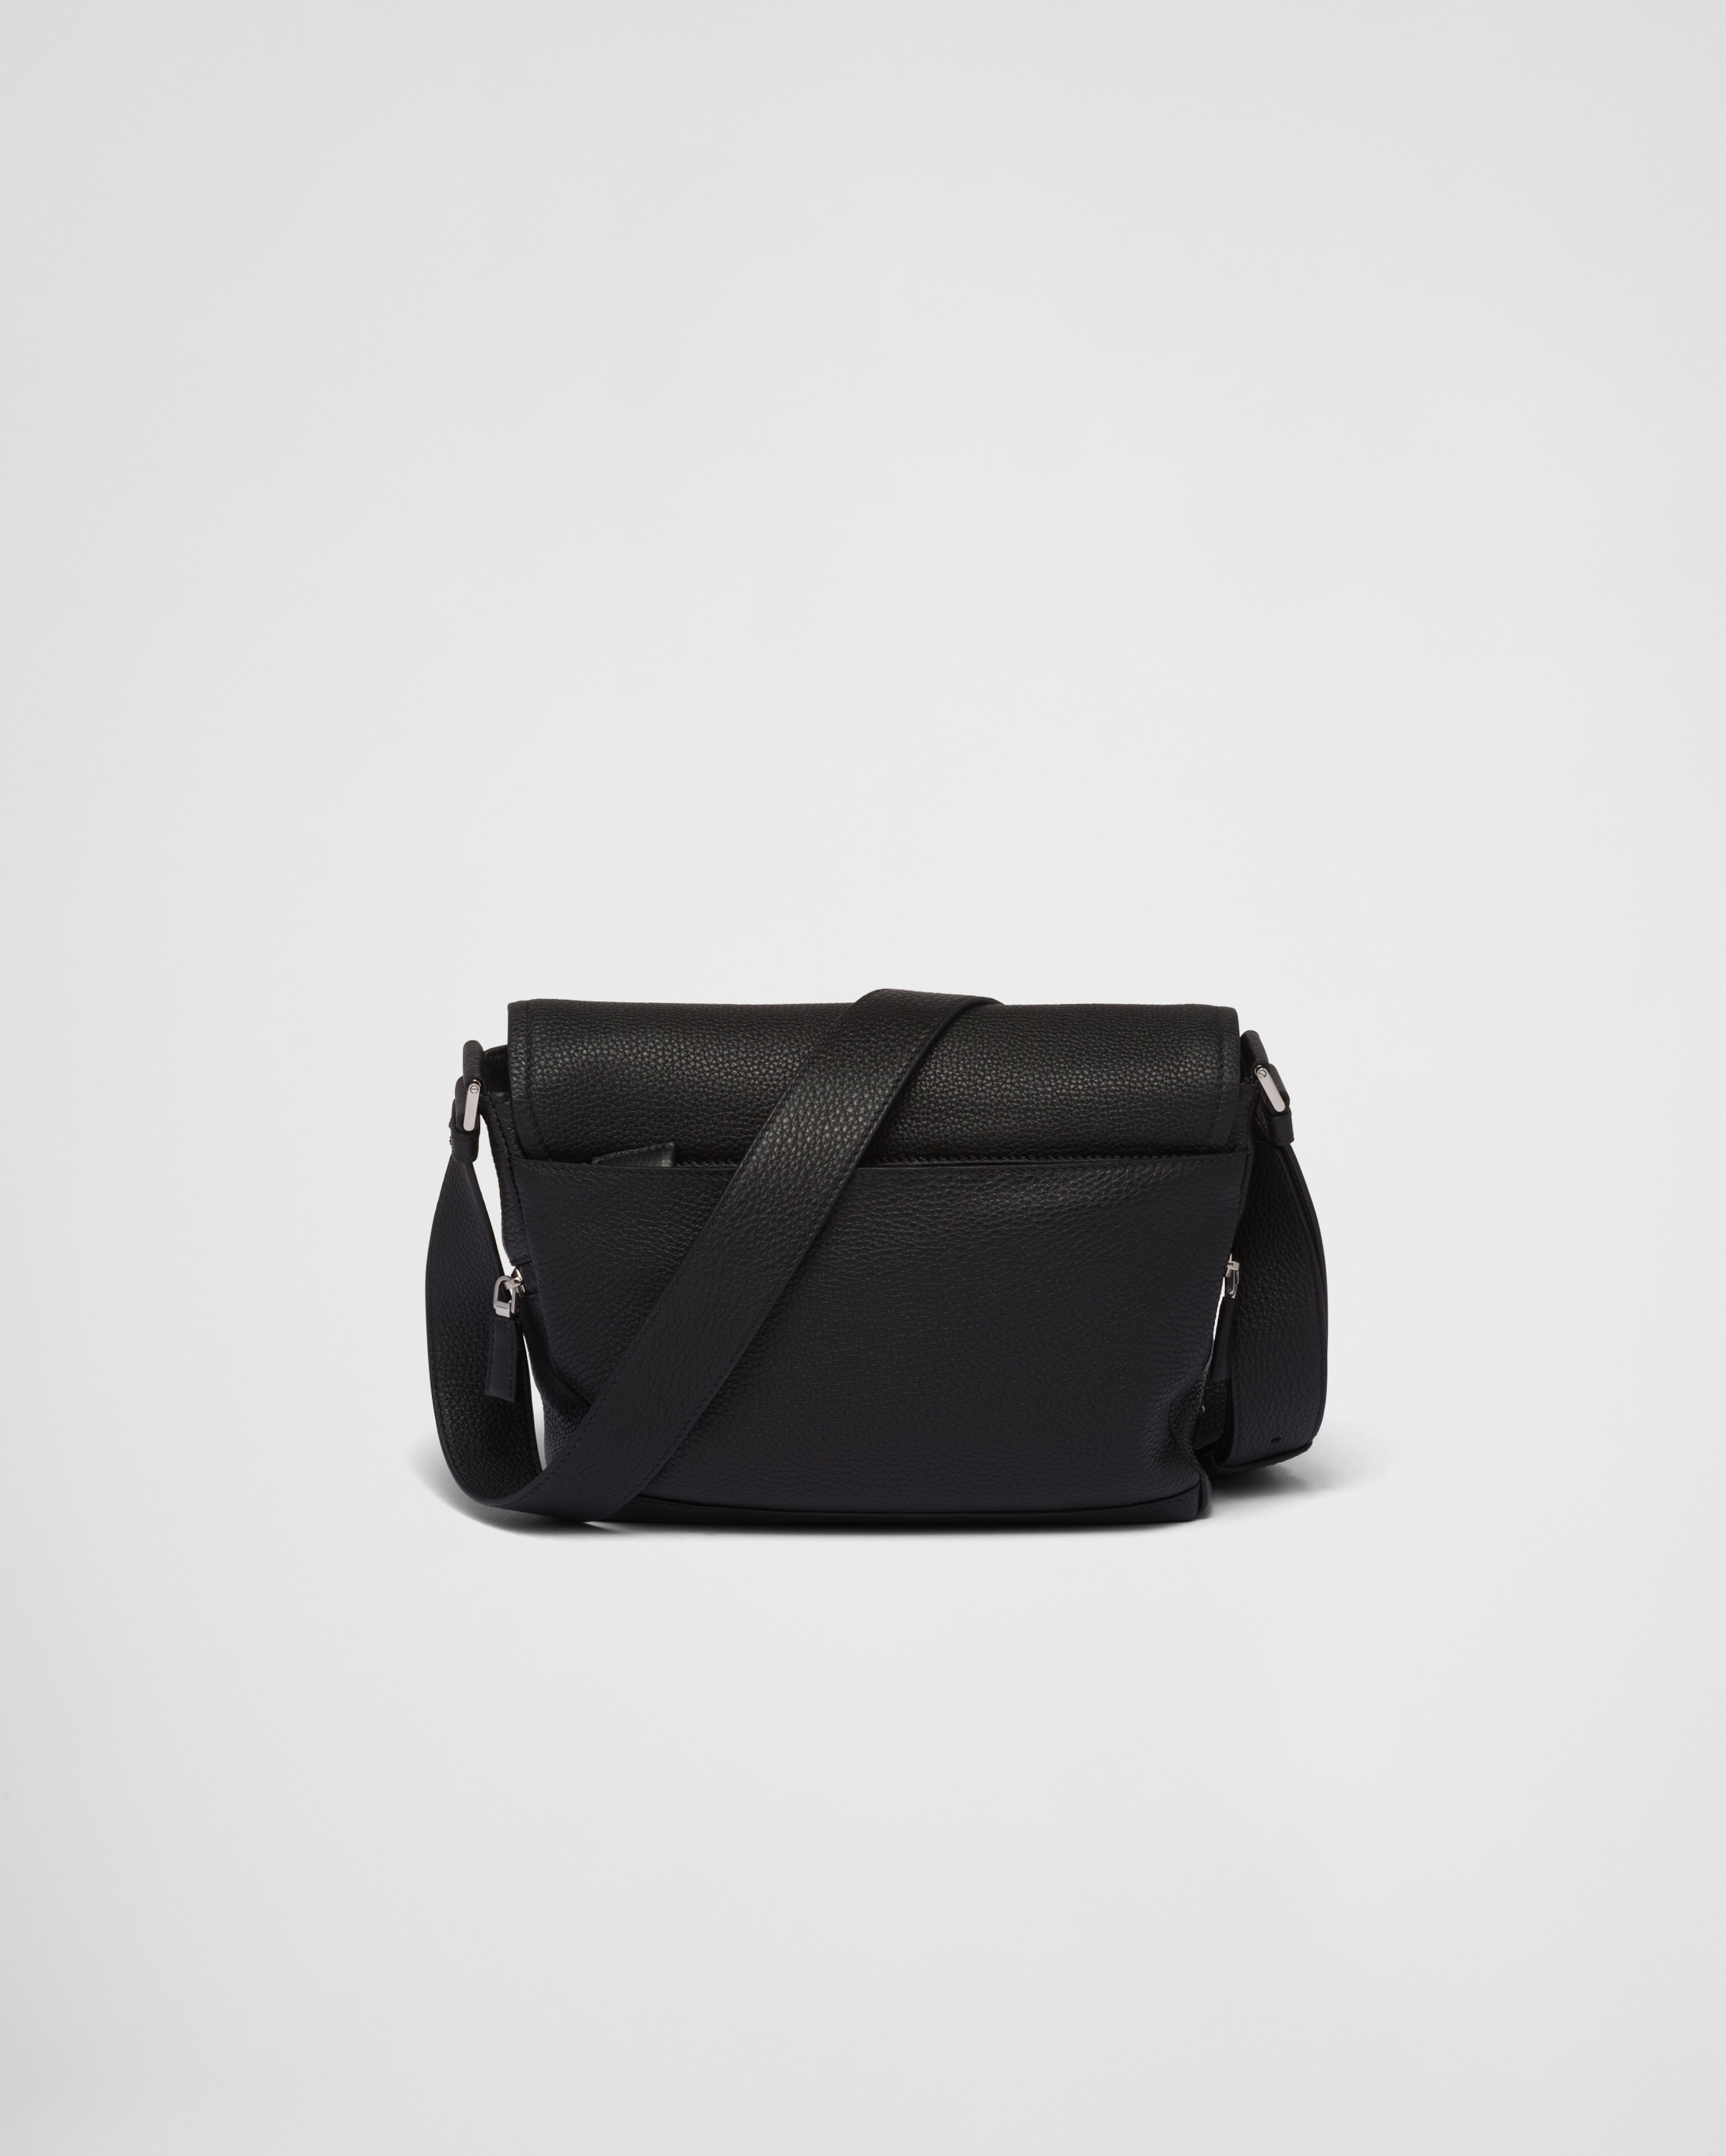 Leather bag with shoulder strap - 4